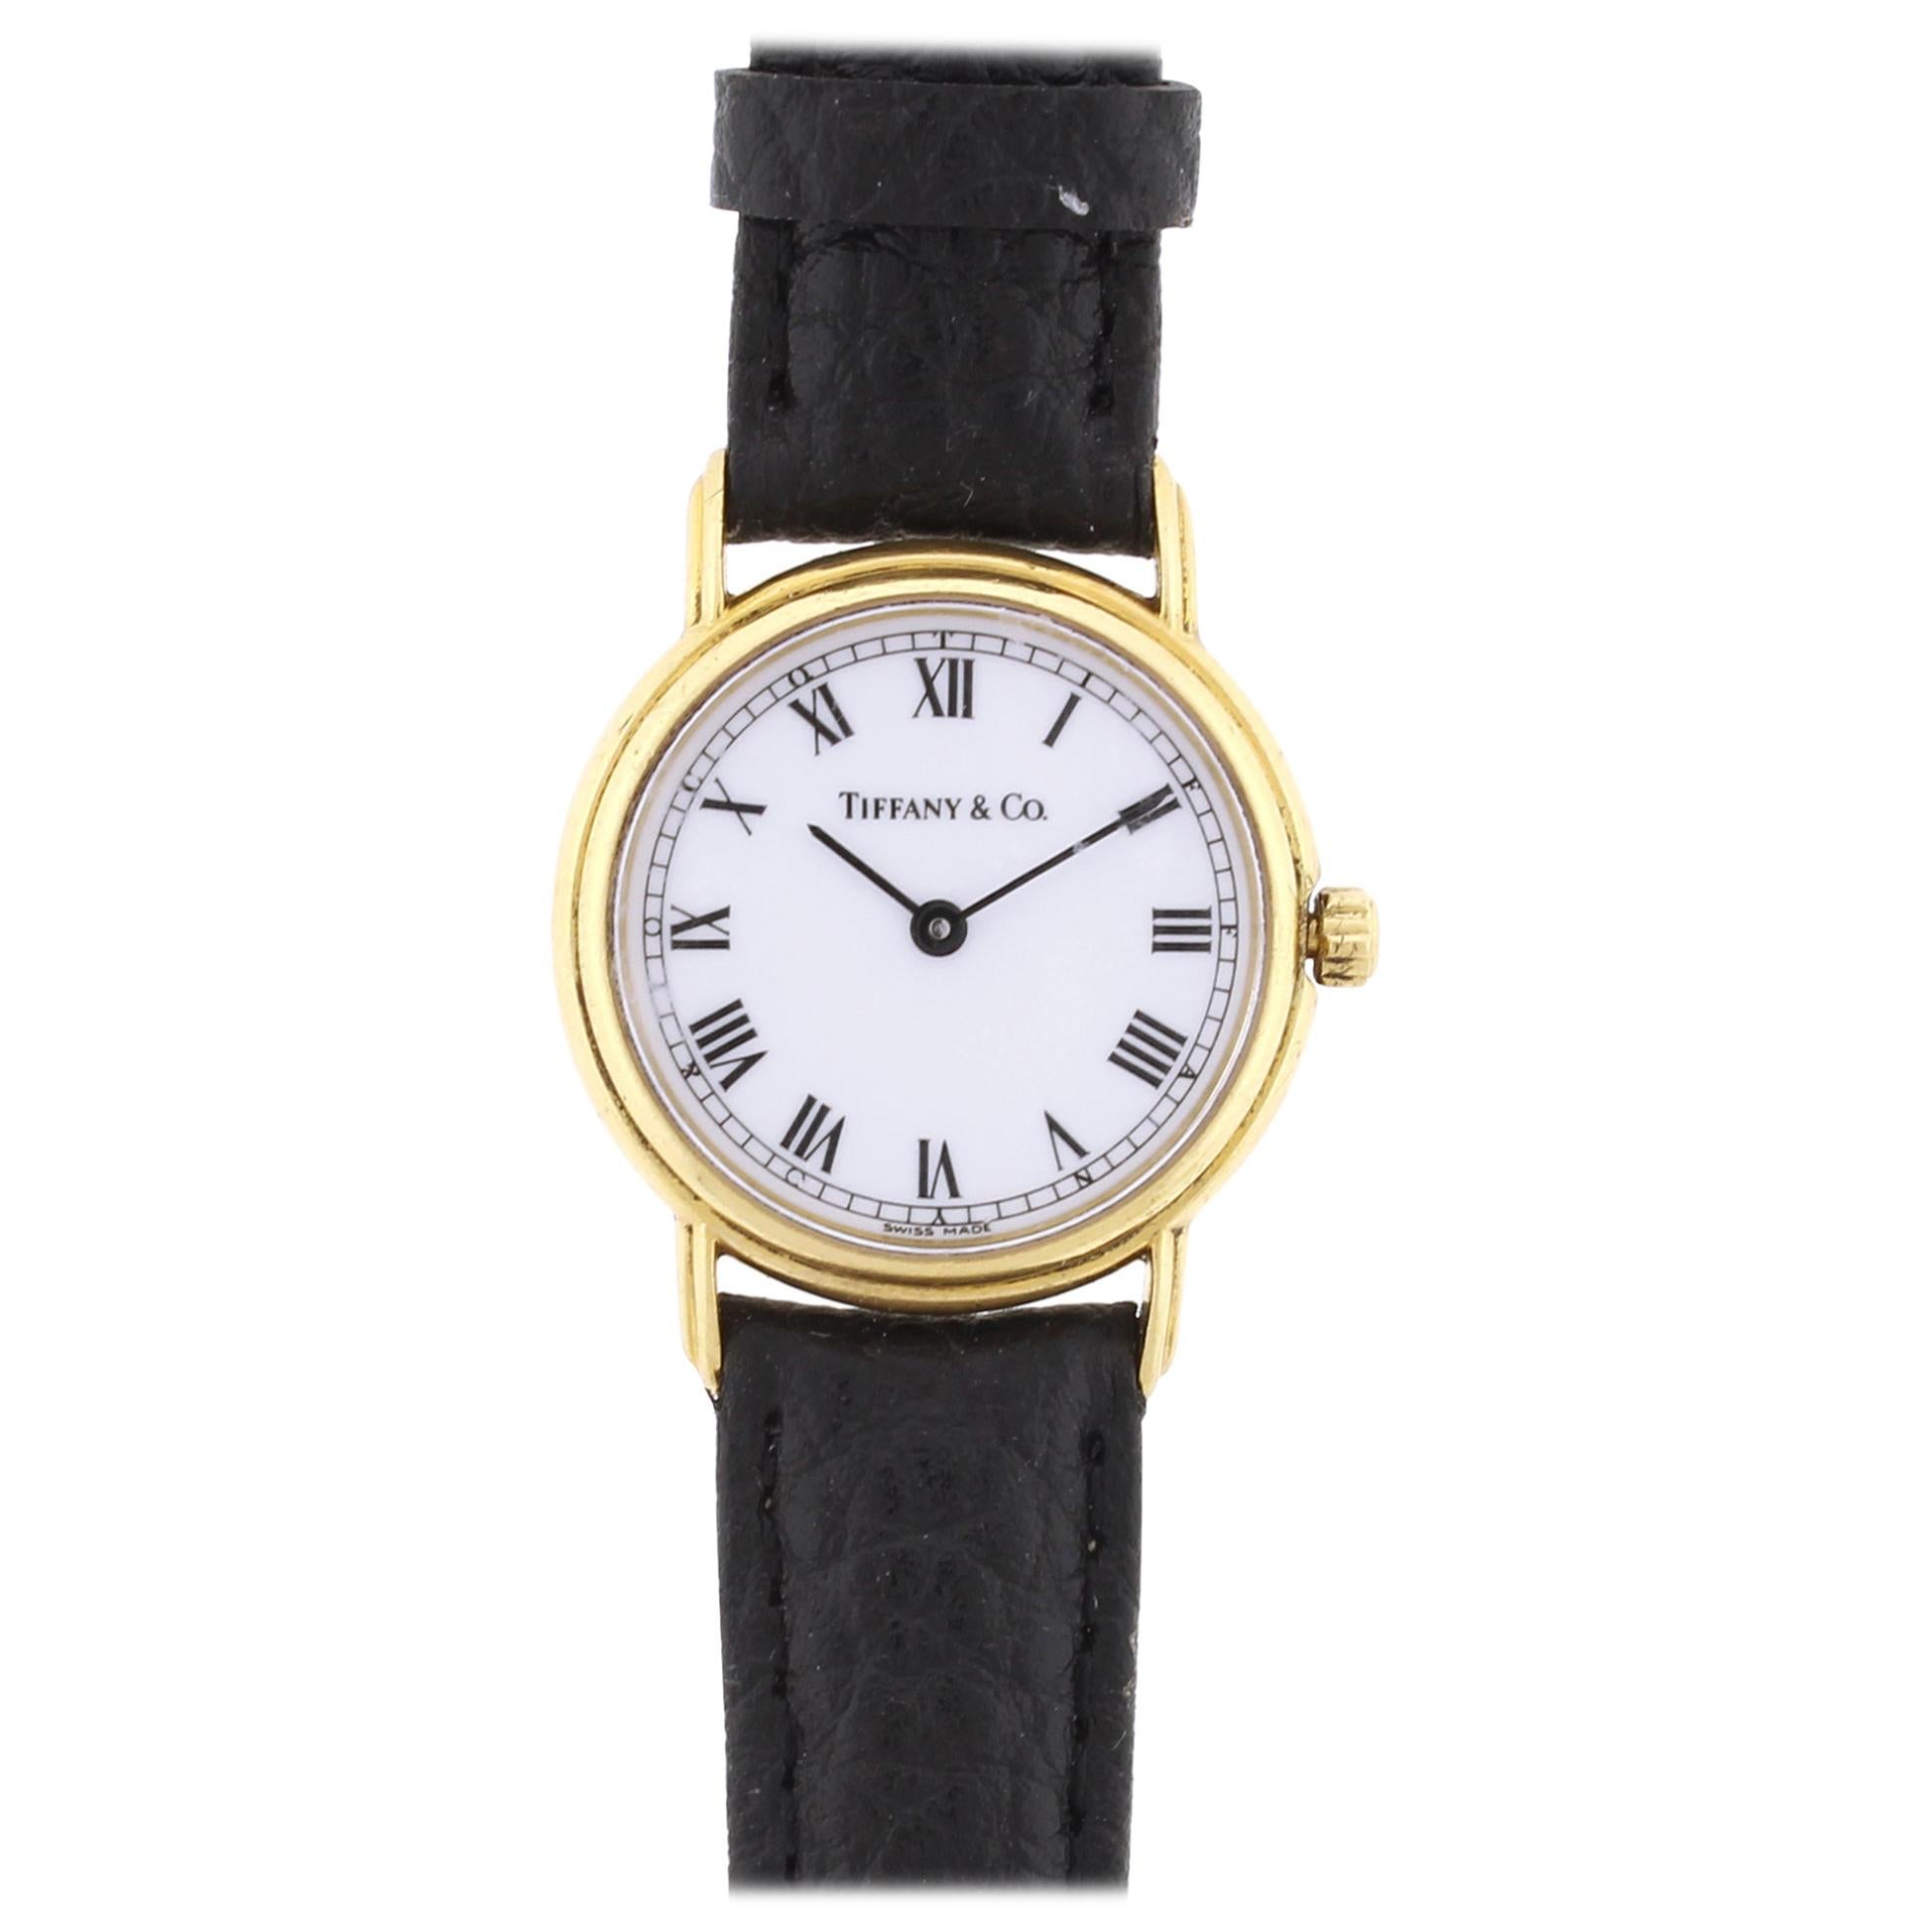 Tiffany & Co. Classic ladies Round Wristwatch